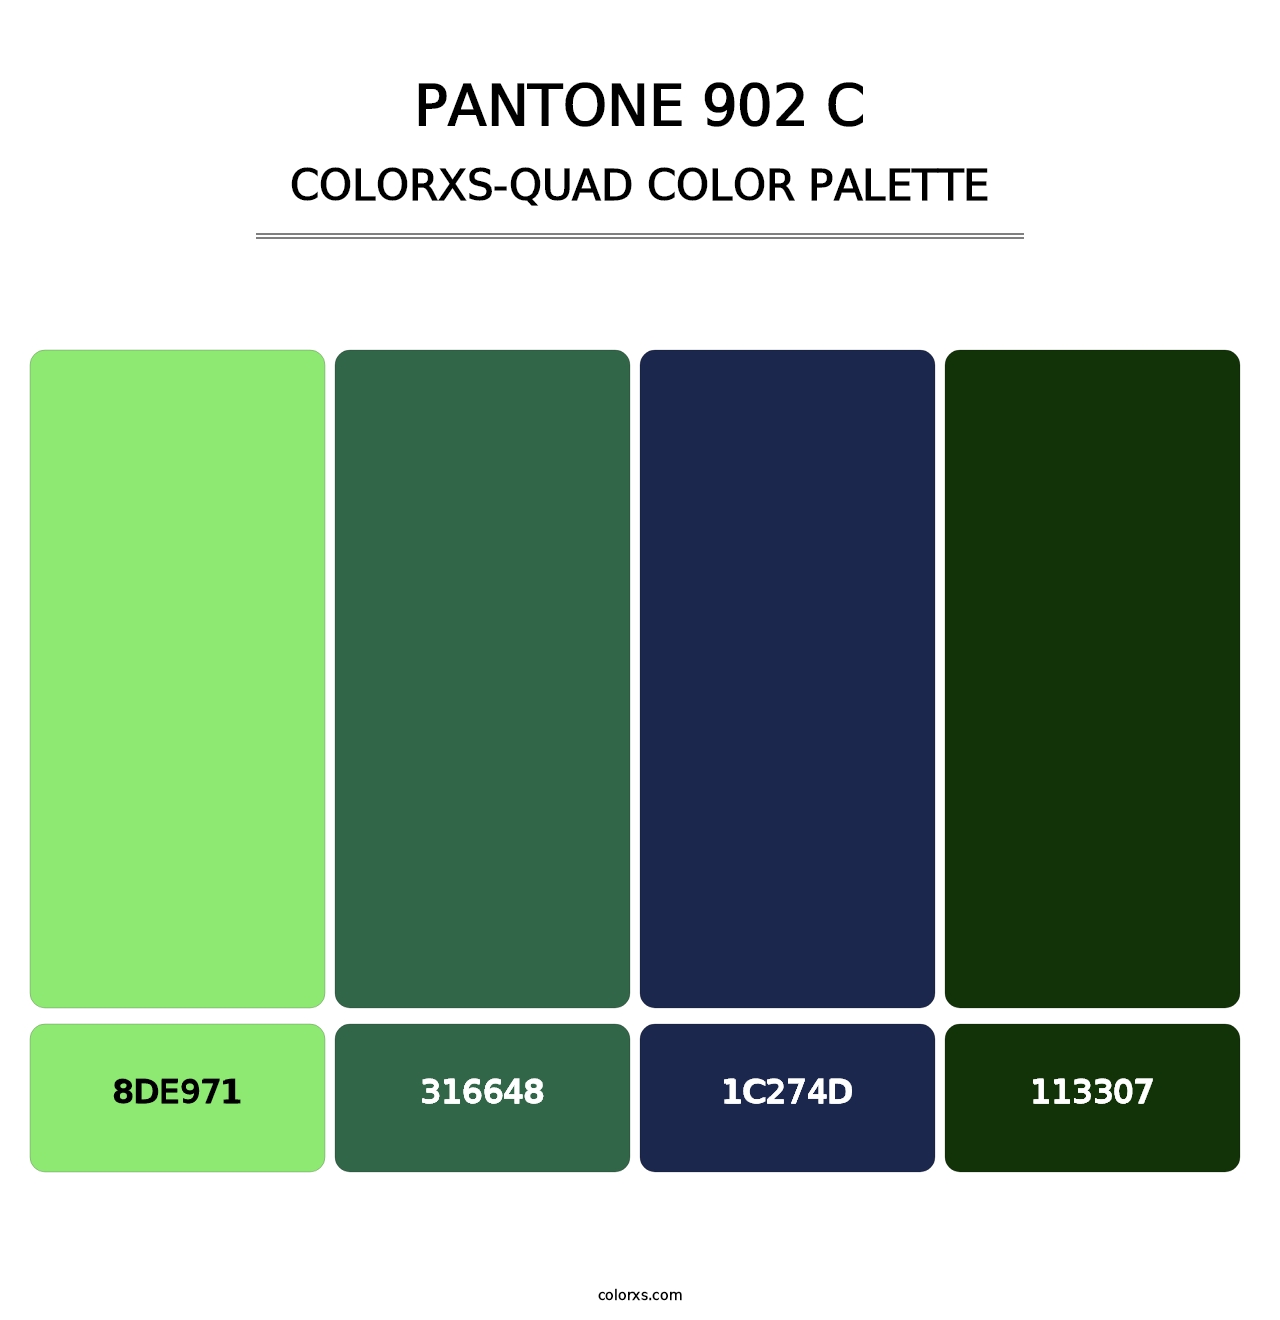 PANTONE 902 C - Colorxs Quad Palette